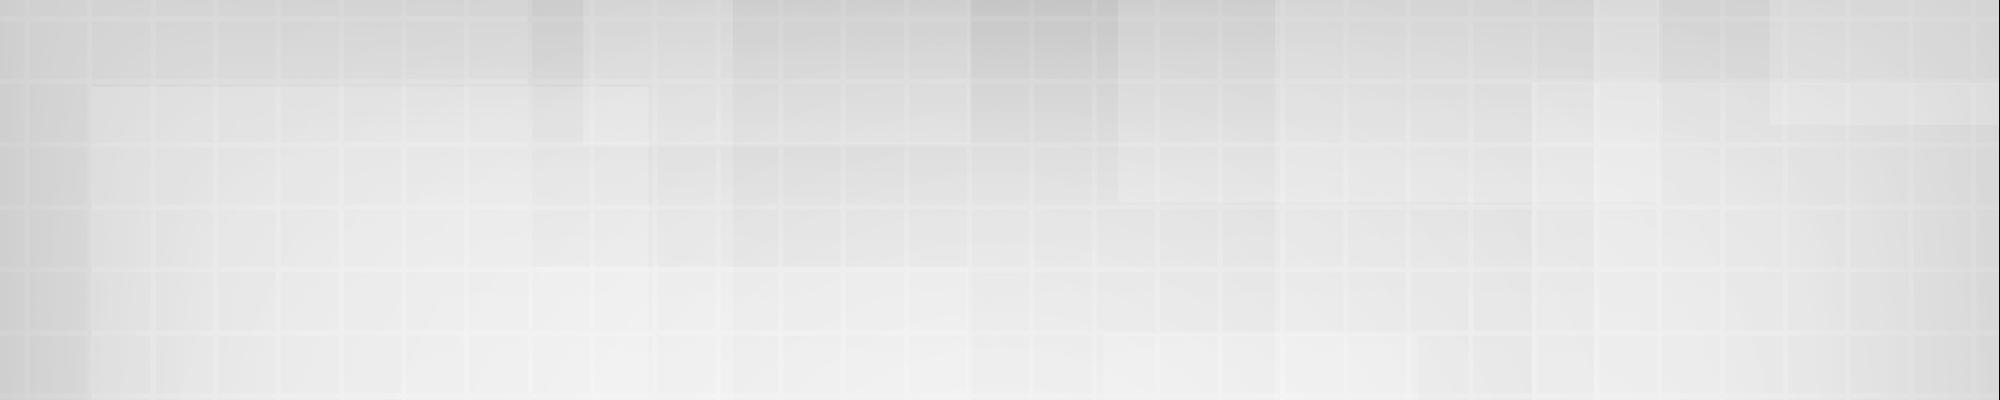 thepixel imagem de foto de capa de portefólio